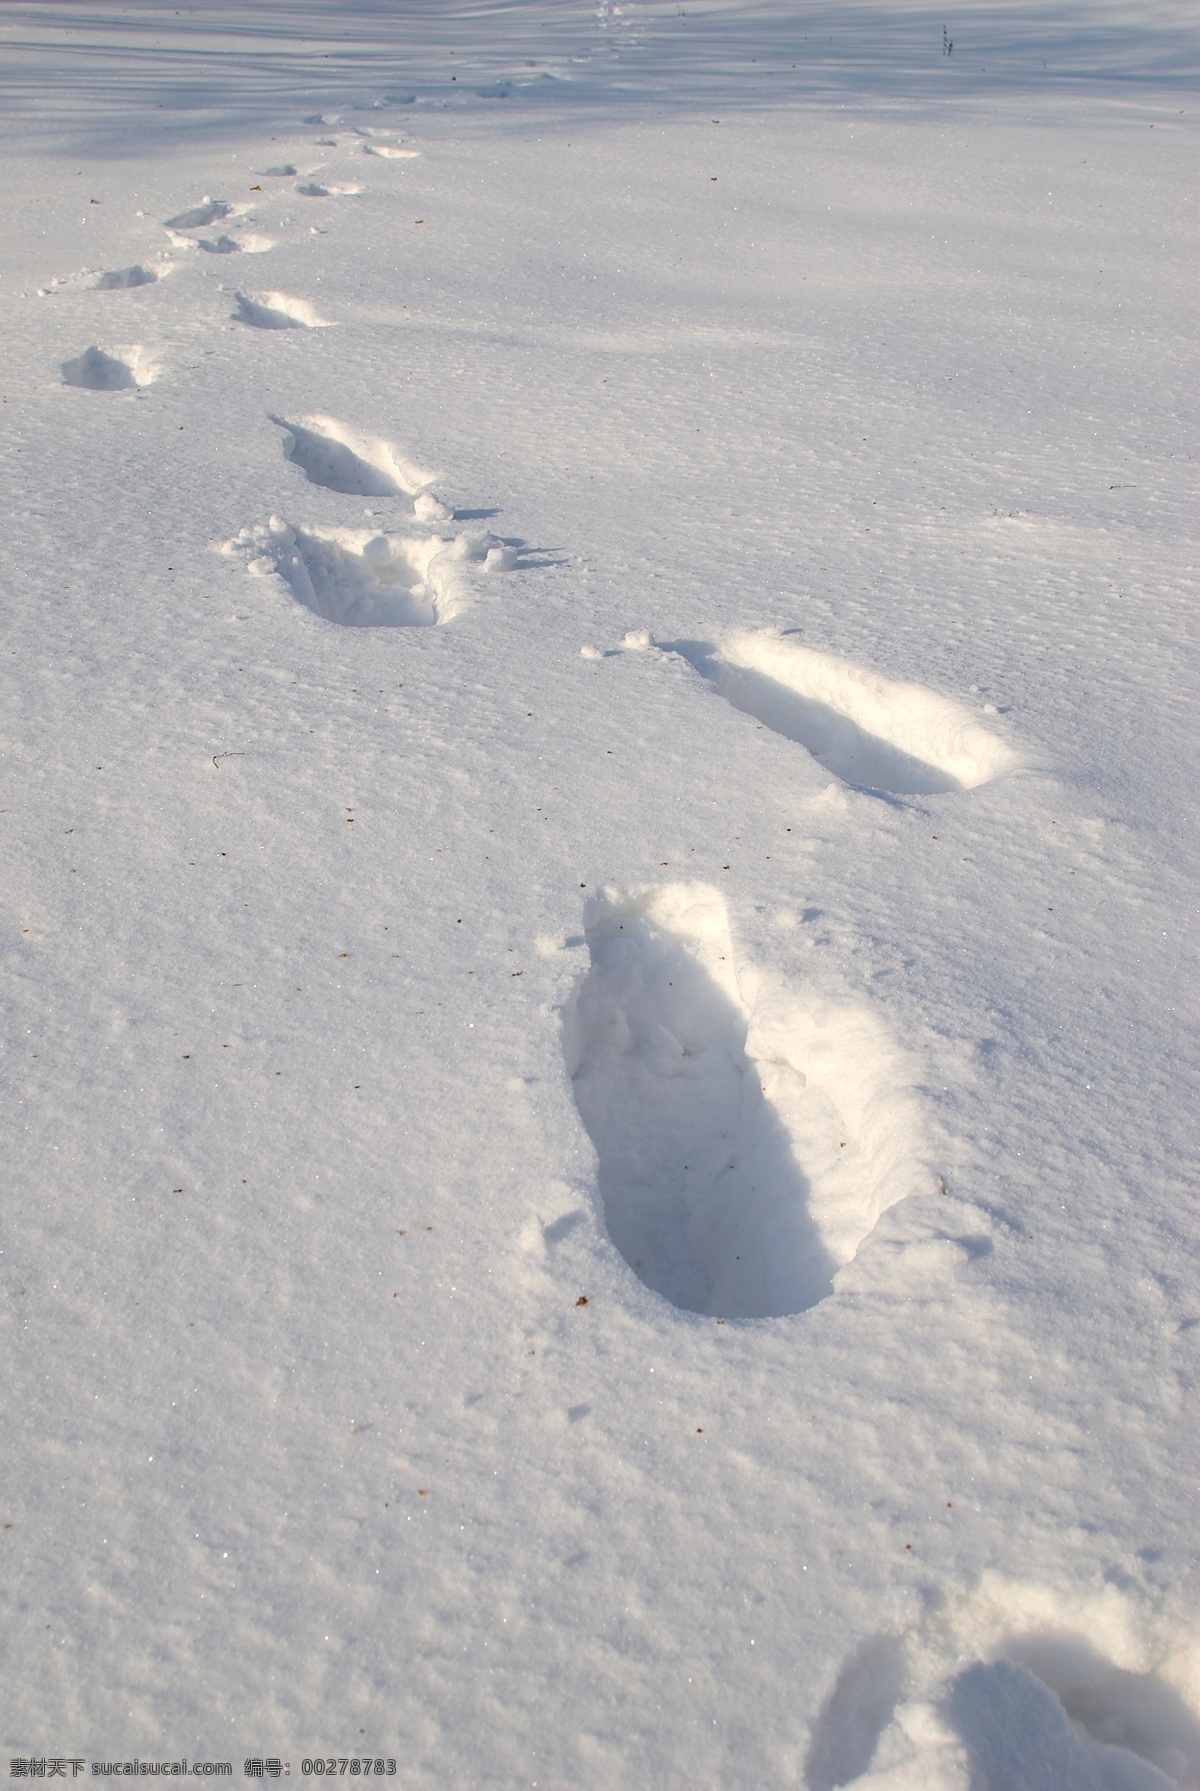 积雪上的脚印 冬天雪景 冬季 美丽风景 美丽雪景 白雪 积雪 风景摄影 雪地 脚印 自然风景 自然景观 灰色